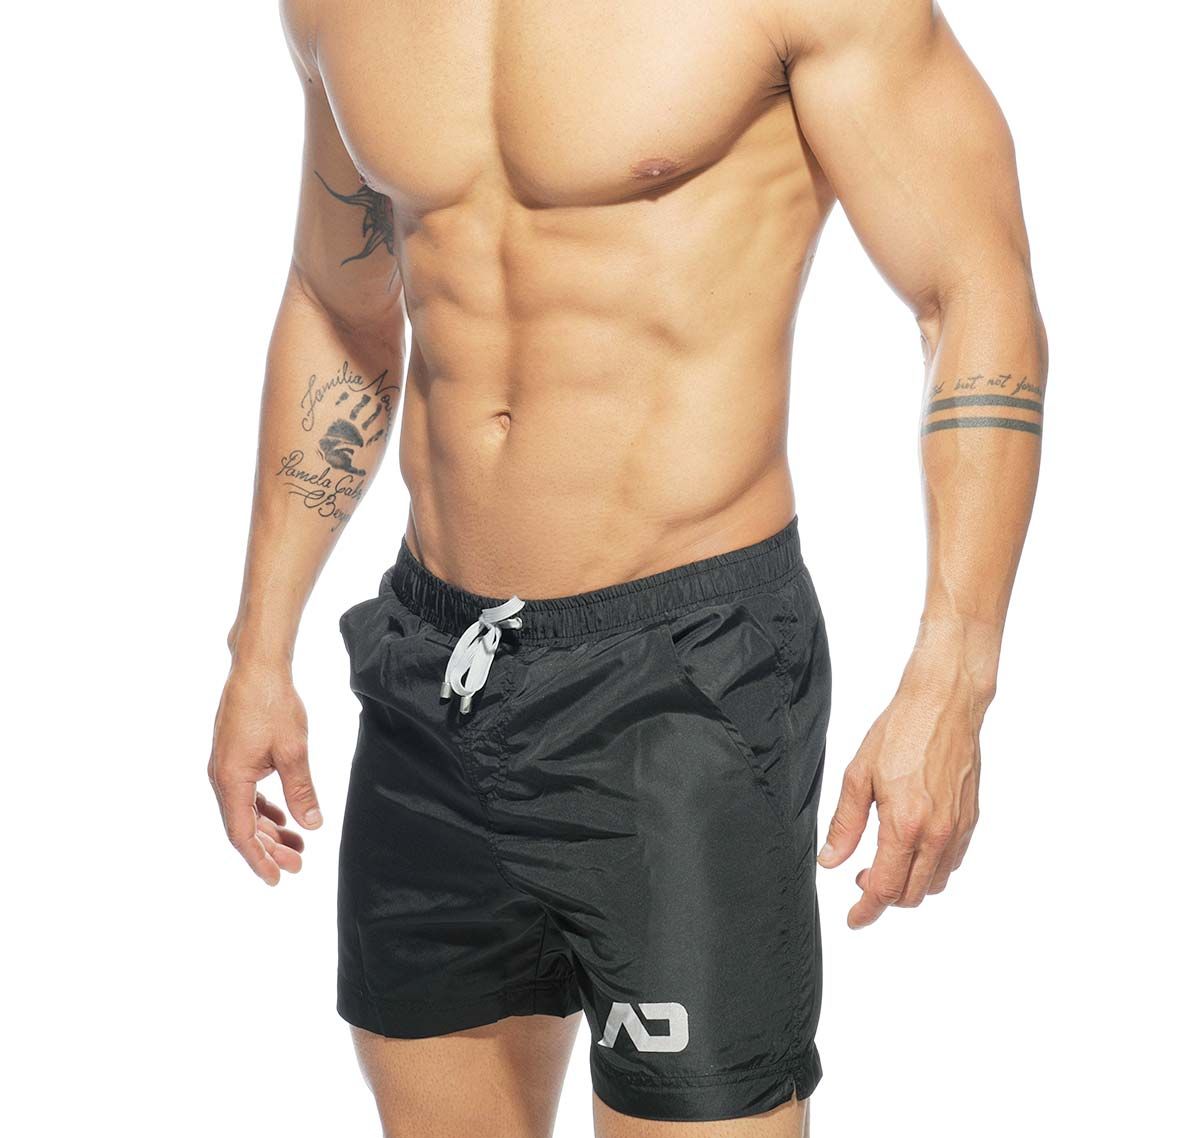 Addicted swim shorts BASIC SWIM LONG SHORT ADS073, black